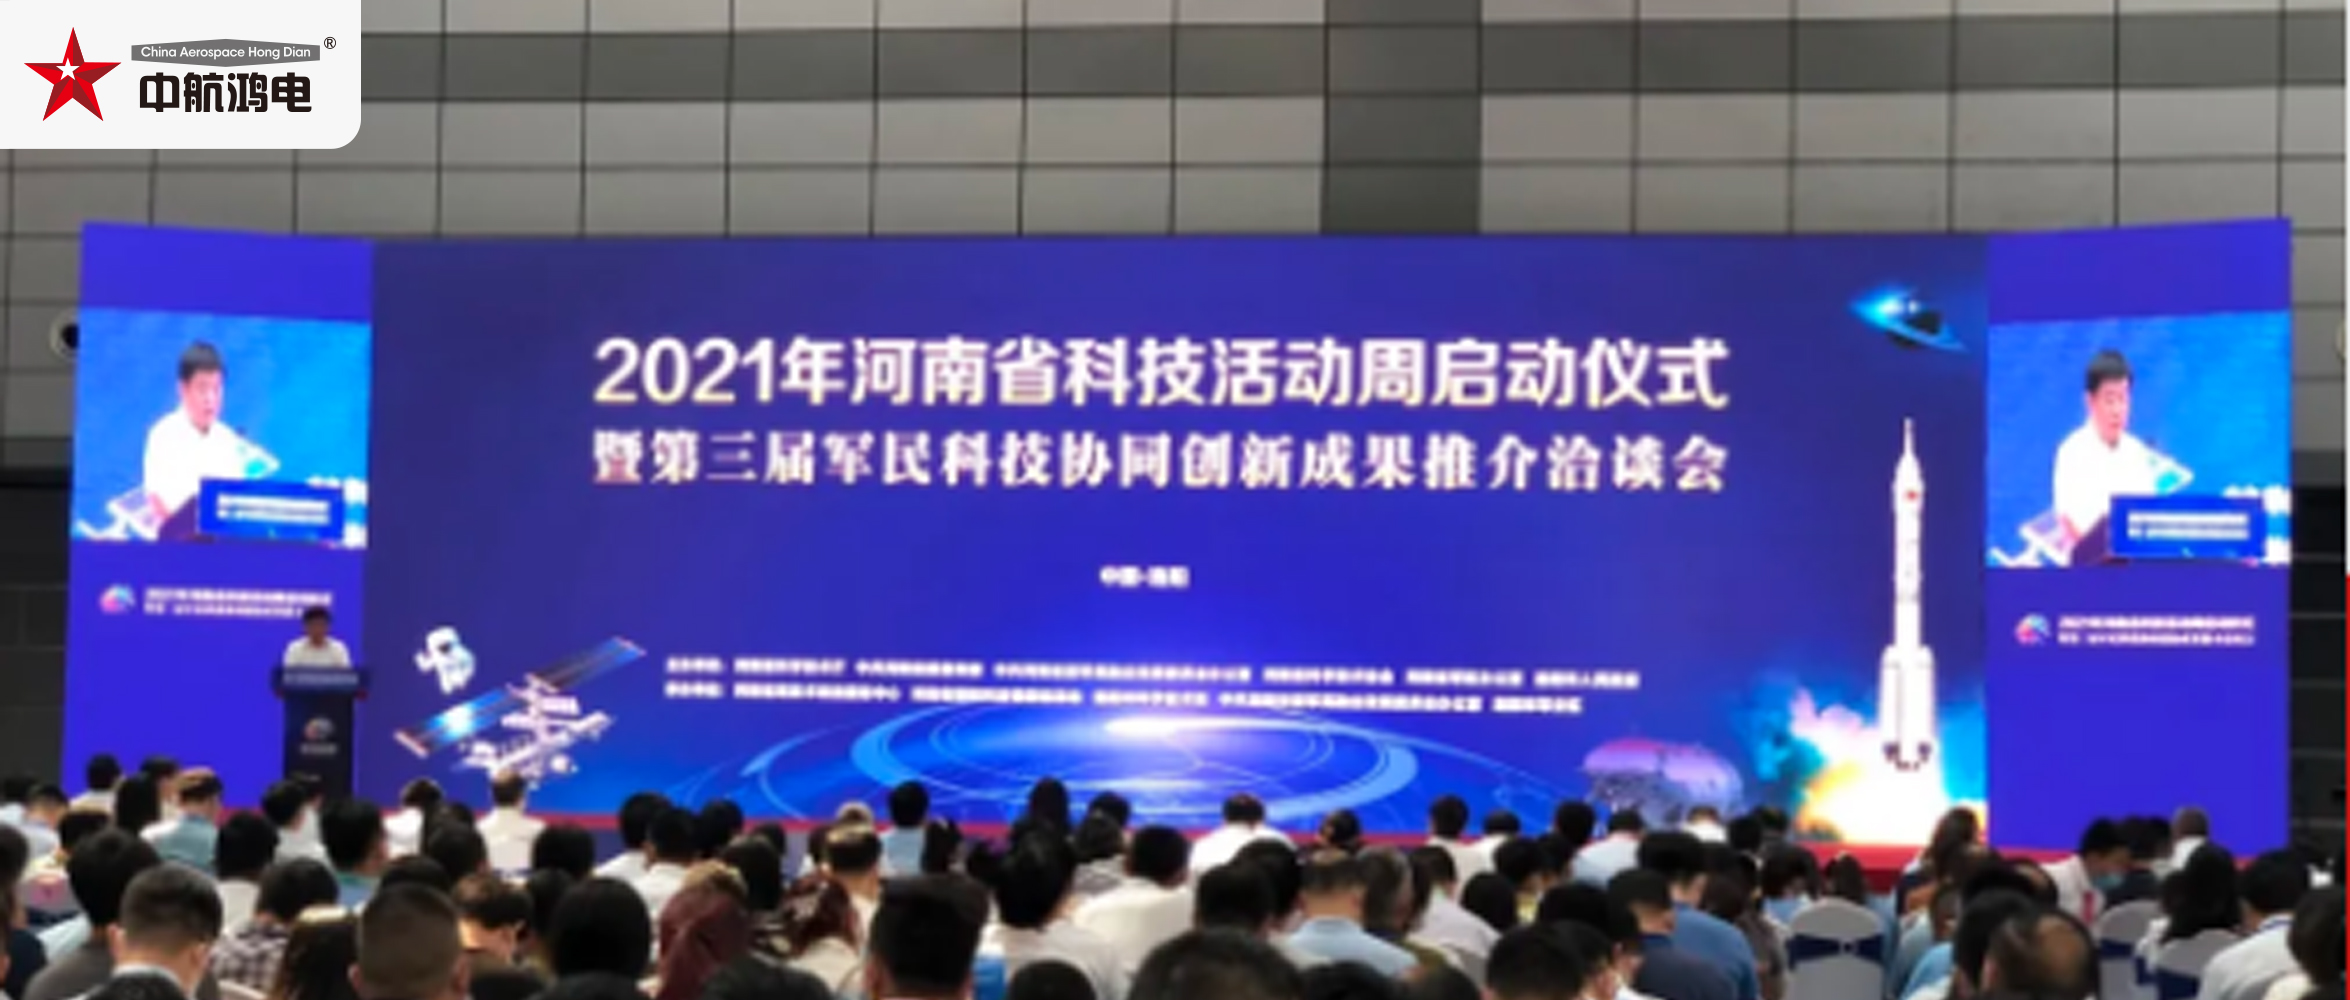 中原申威参加河南省第三届军民科技协同创新成果展